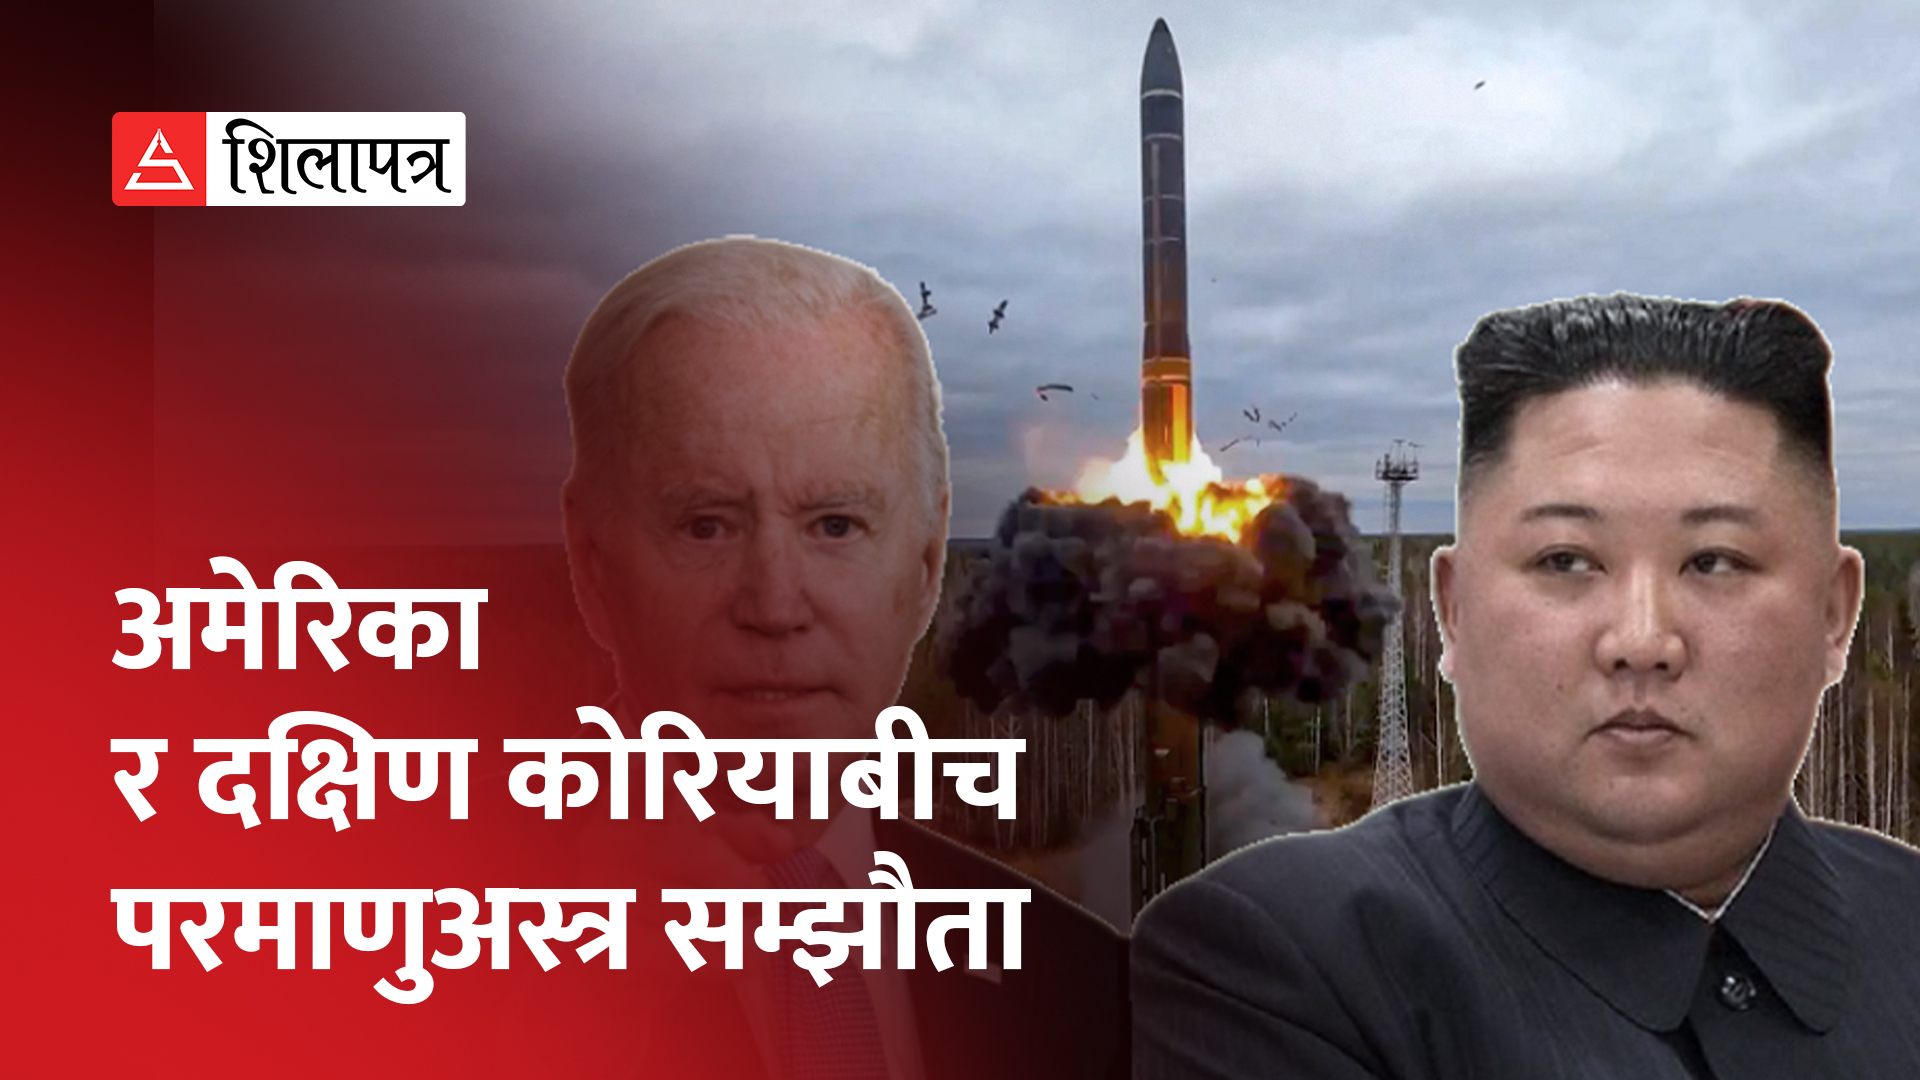 उत्तर कोरियाली सर्वोच्च नेता किमको शासन समाप्त गरिदिने अमेरिकी चेतावनी